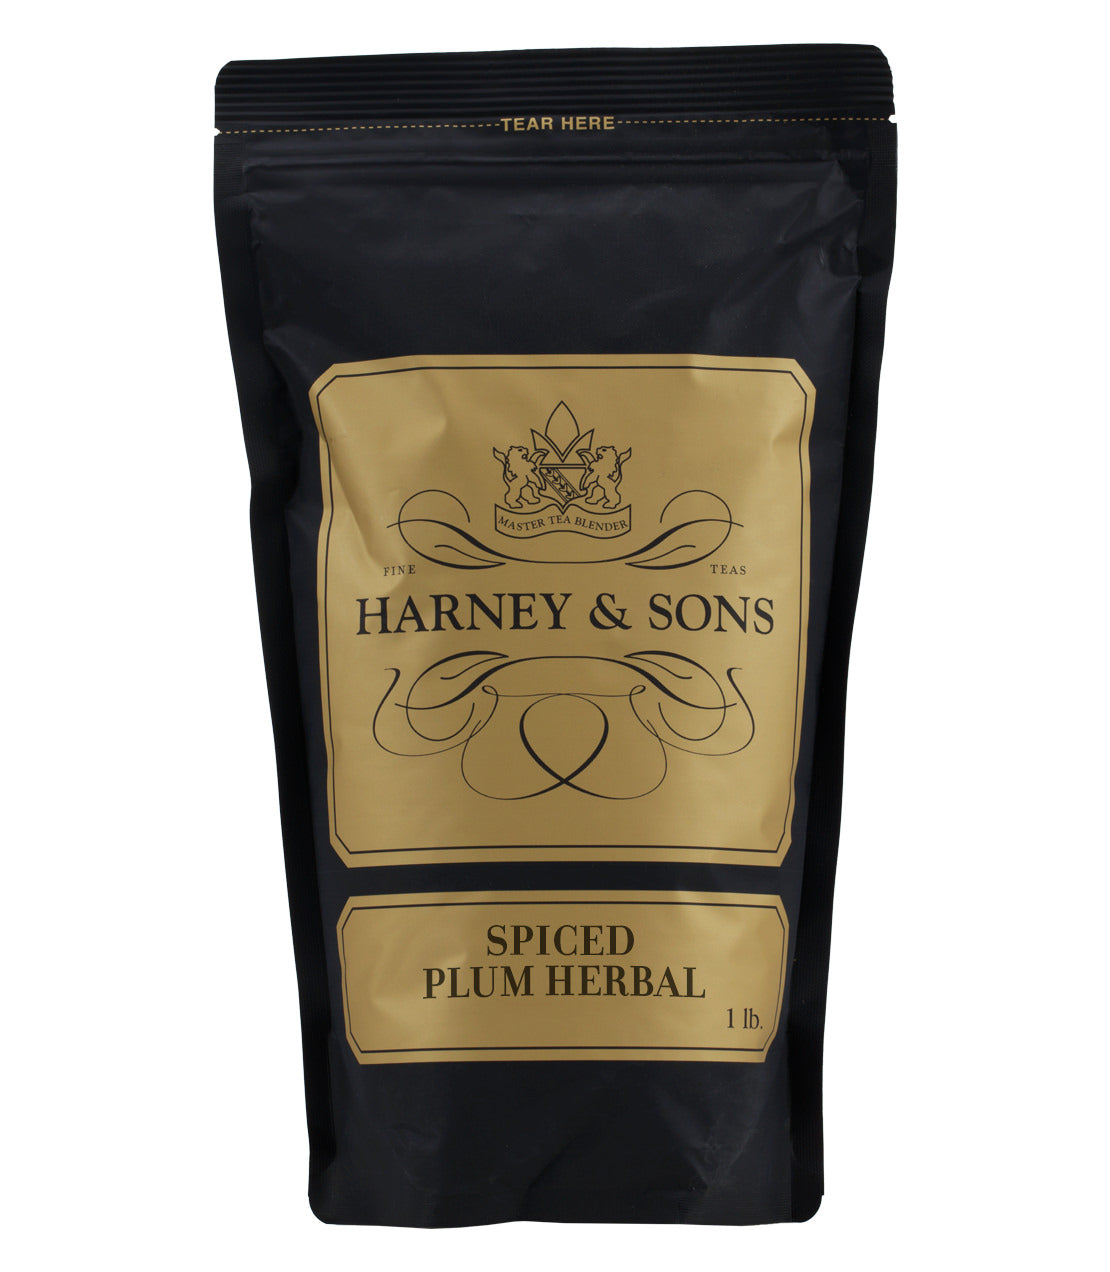 Spiced Plum Herbal - Loose 1 lb. Bag - Harney & Sons Fine Teas